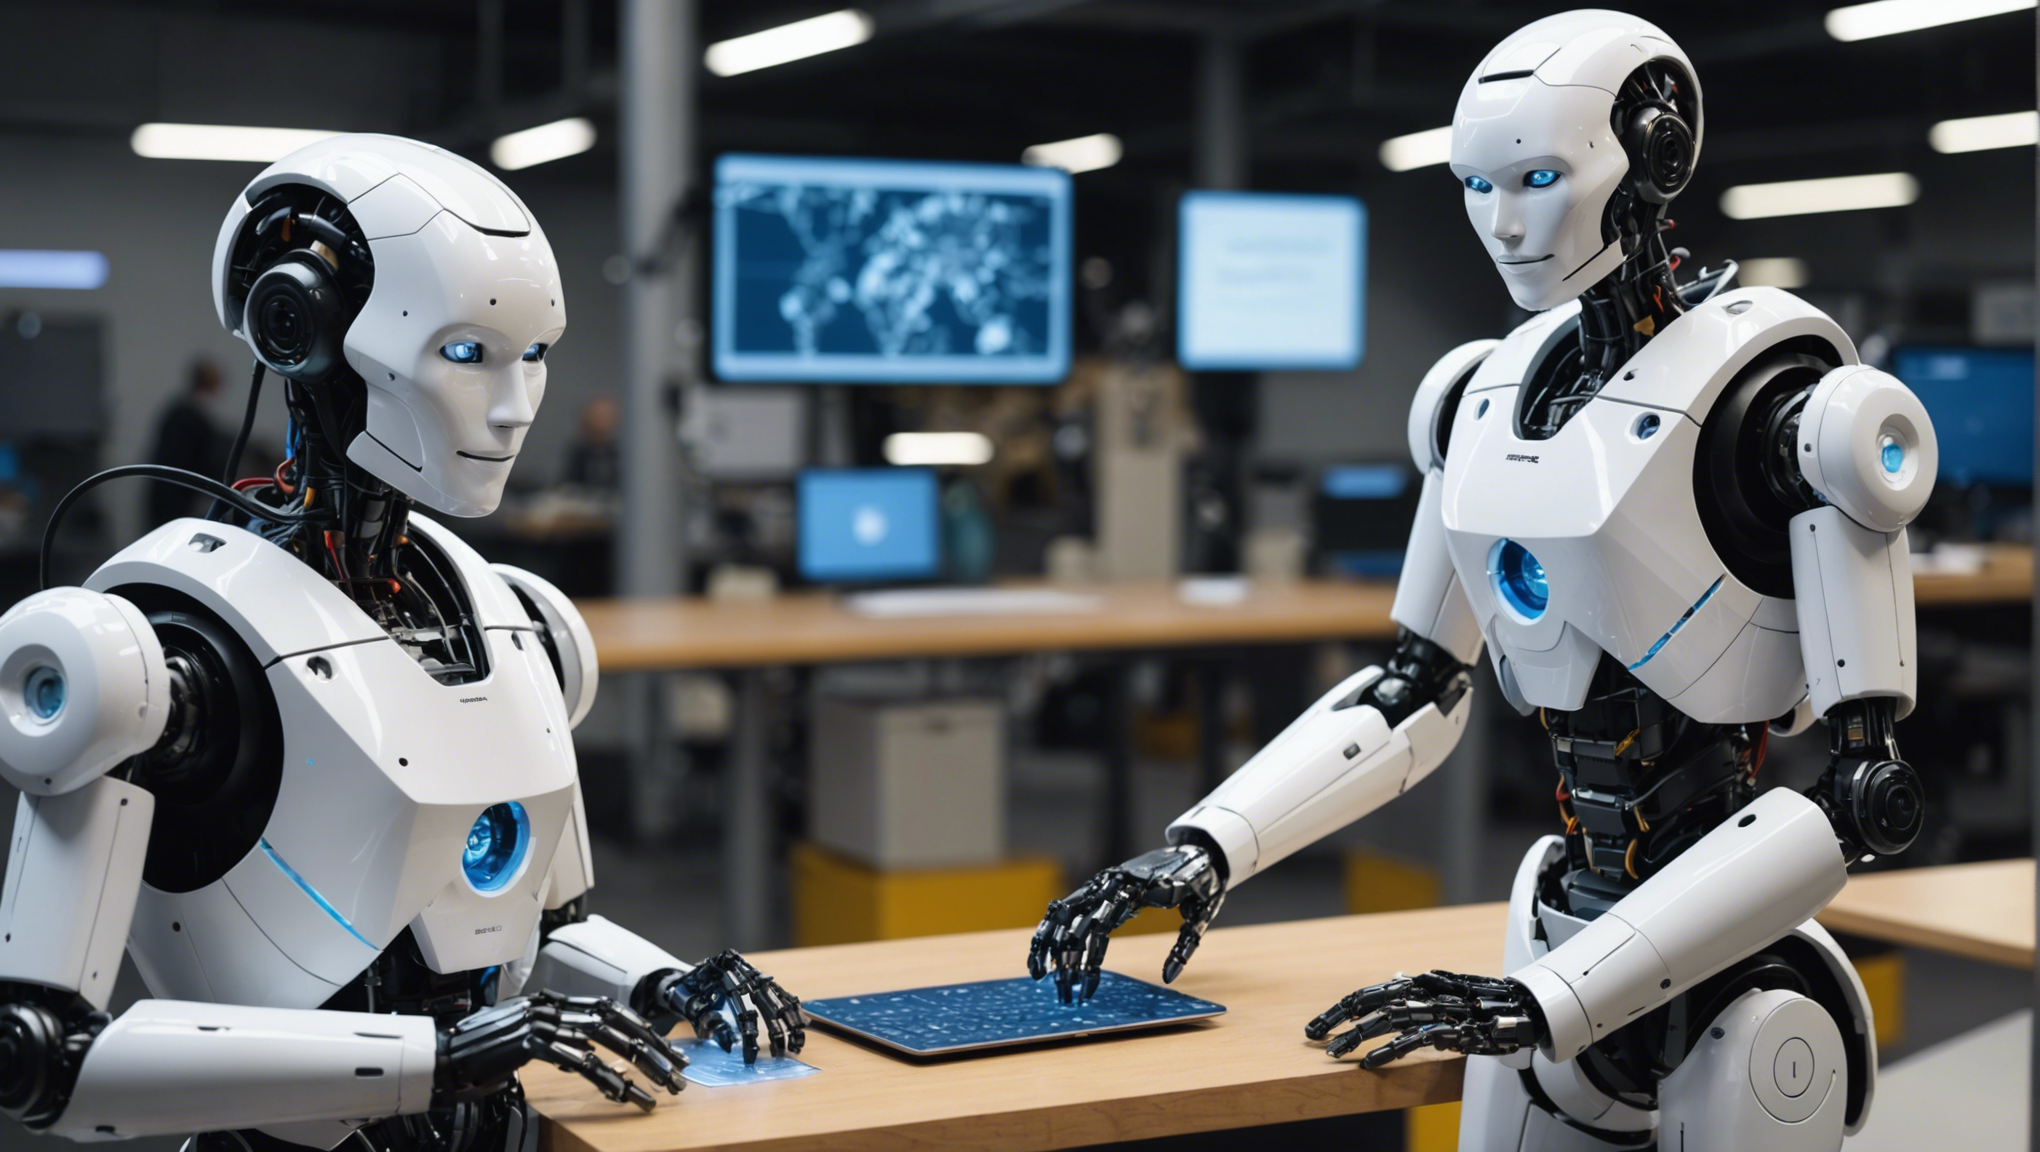 découvrez les cours en ligne sur la robotique et l'intelligence artificielle pour apprendre et maîtriser ces technologies du futur.